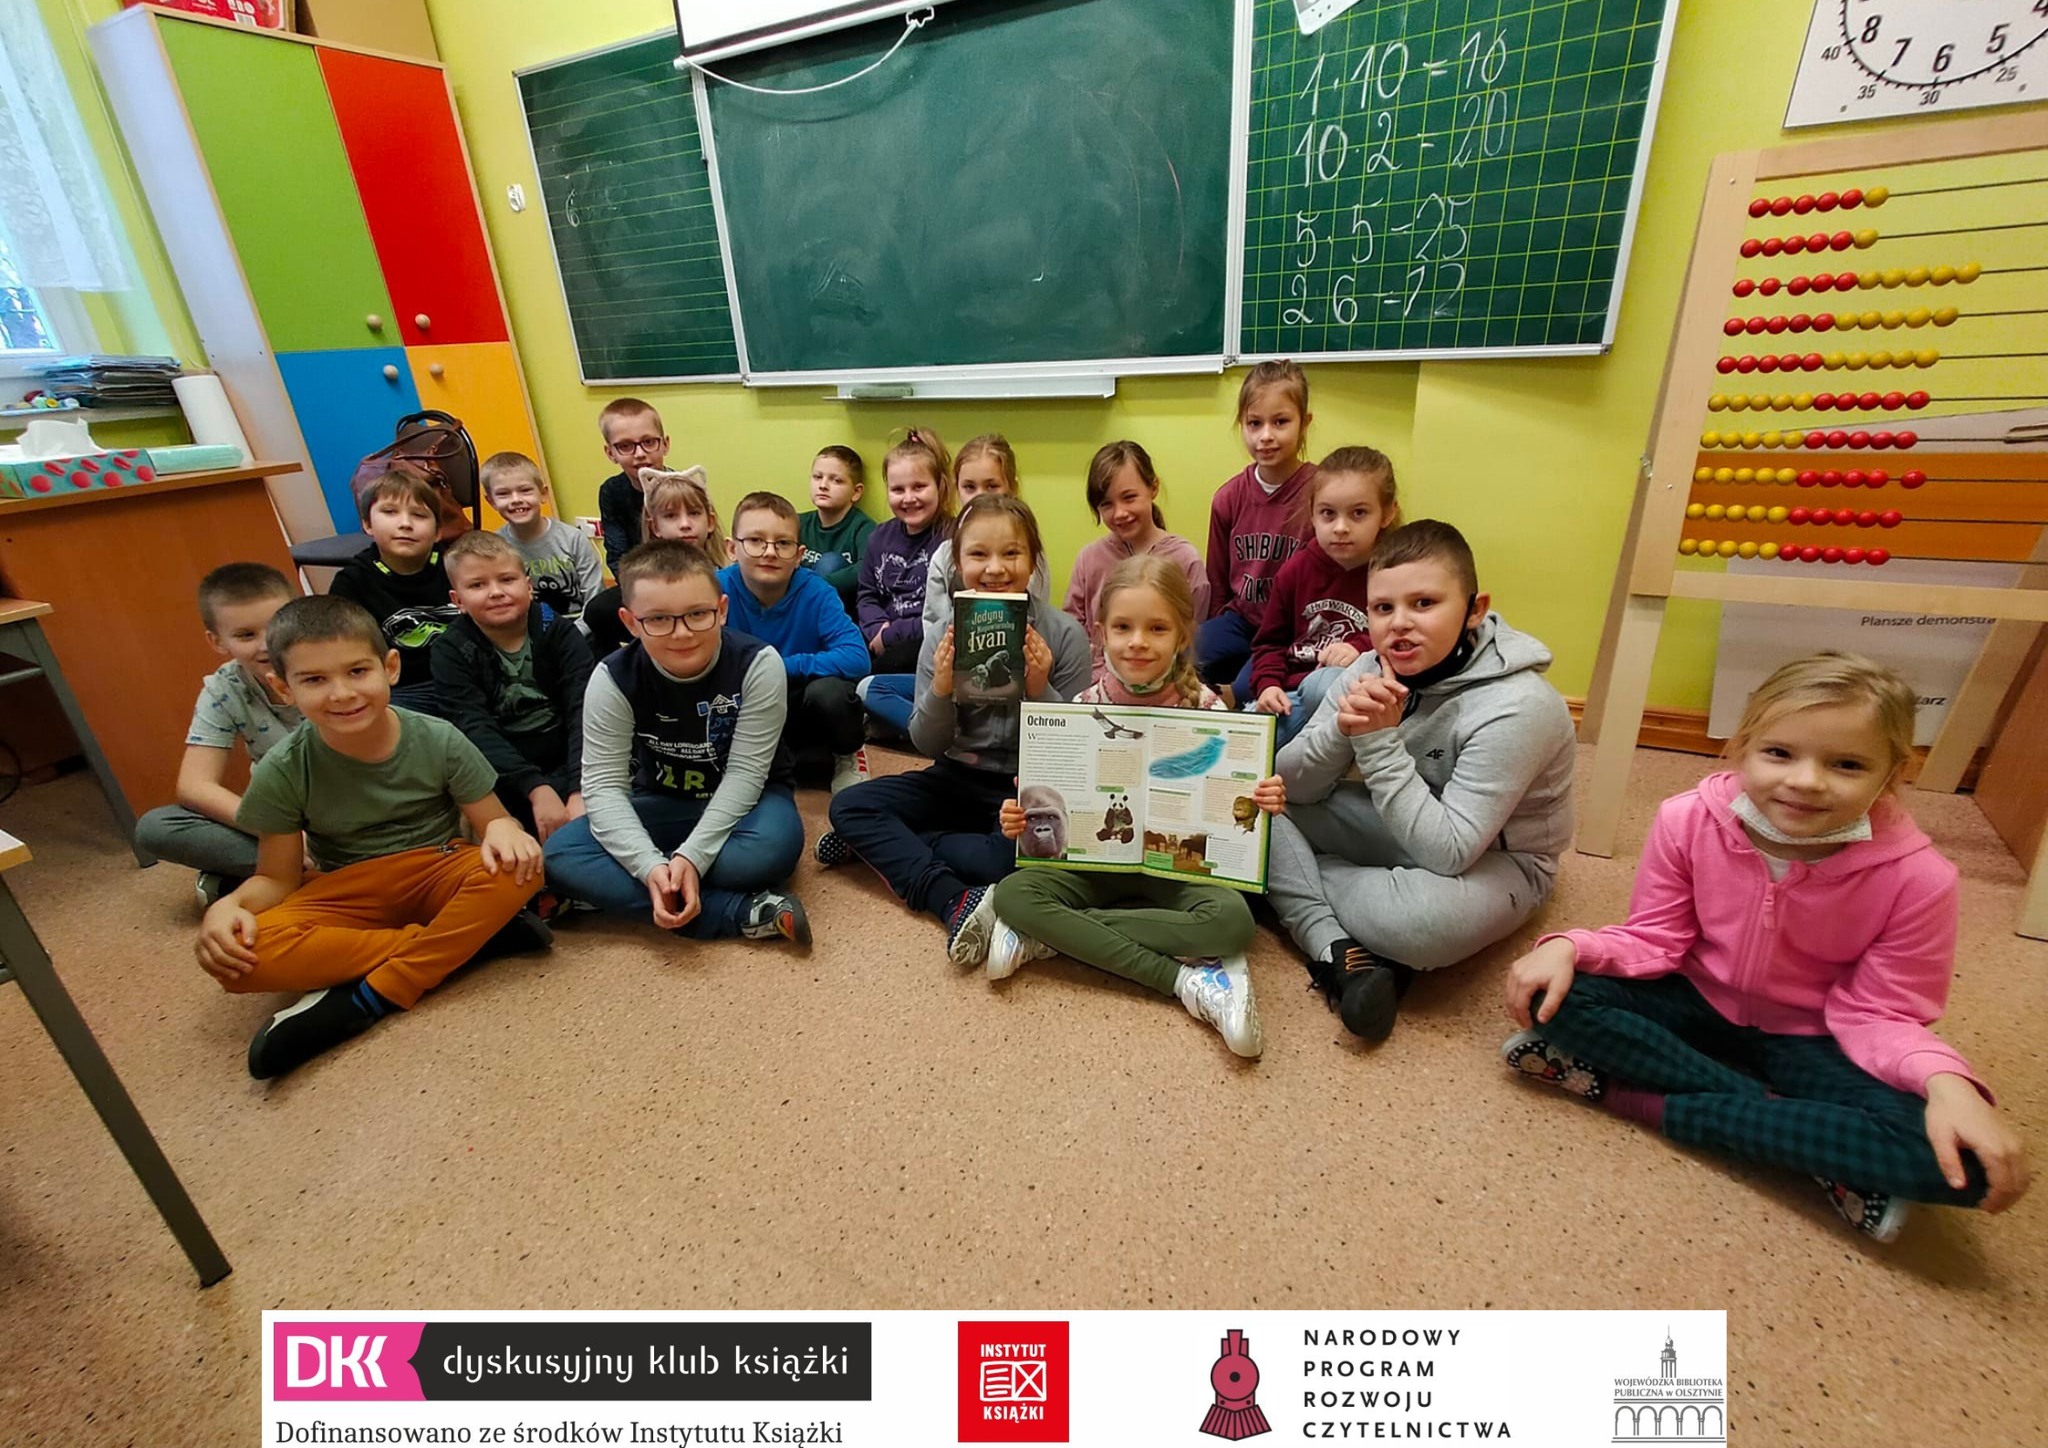 19 dzieci siedzi na podłodze pod tablicą w szkolnej klacie, dwie z nich trzymają książki